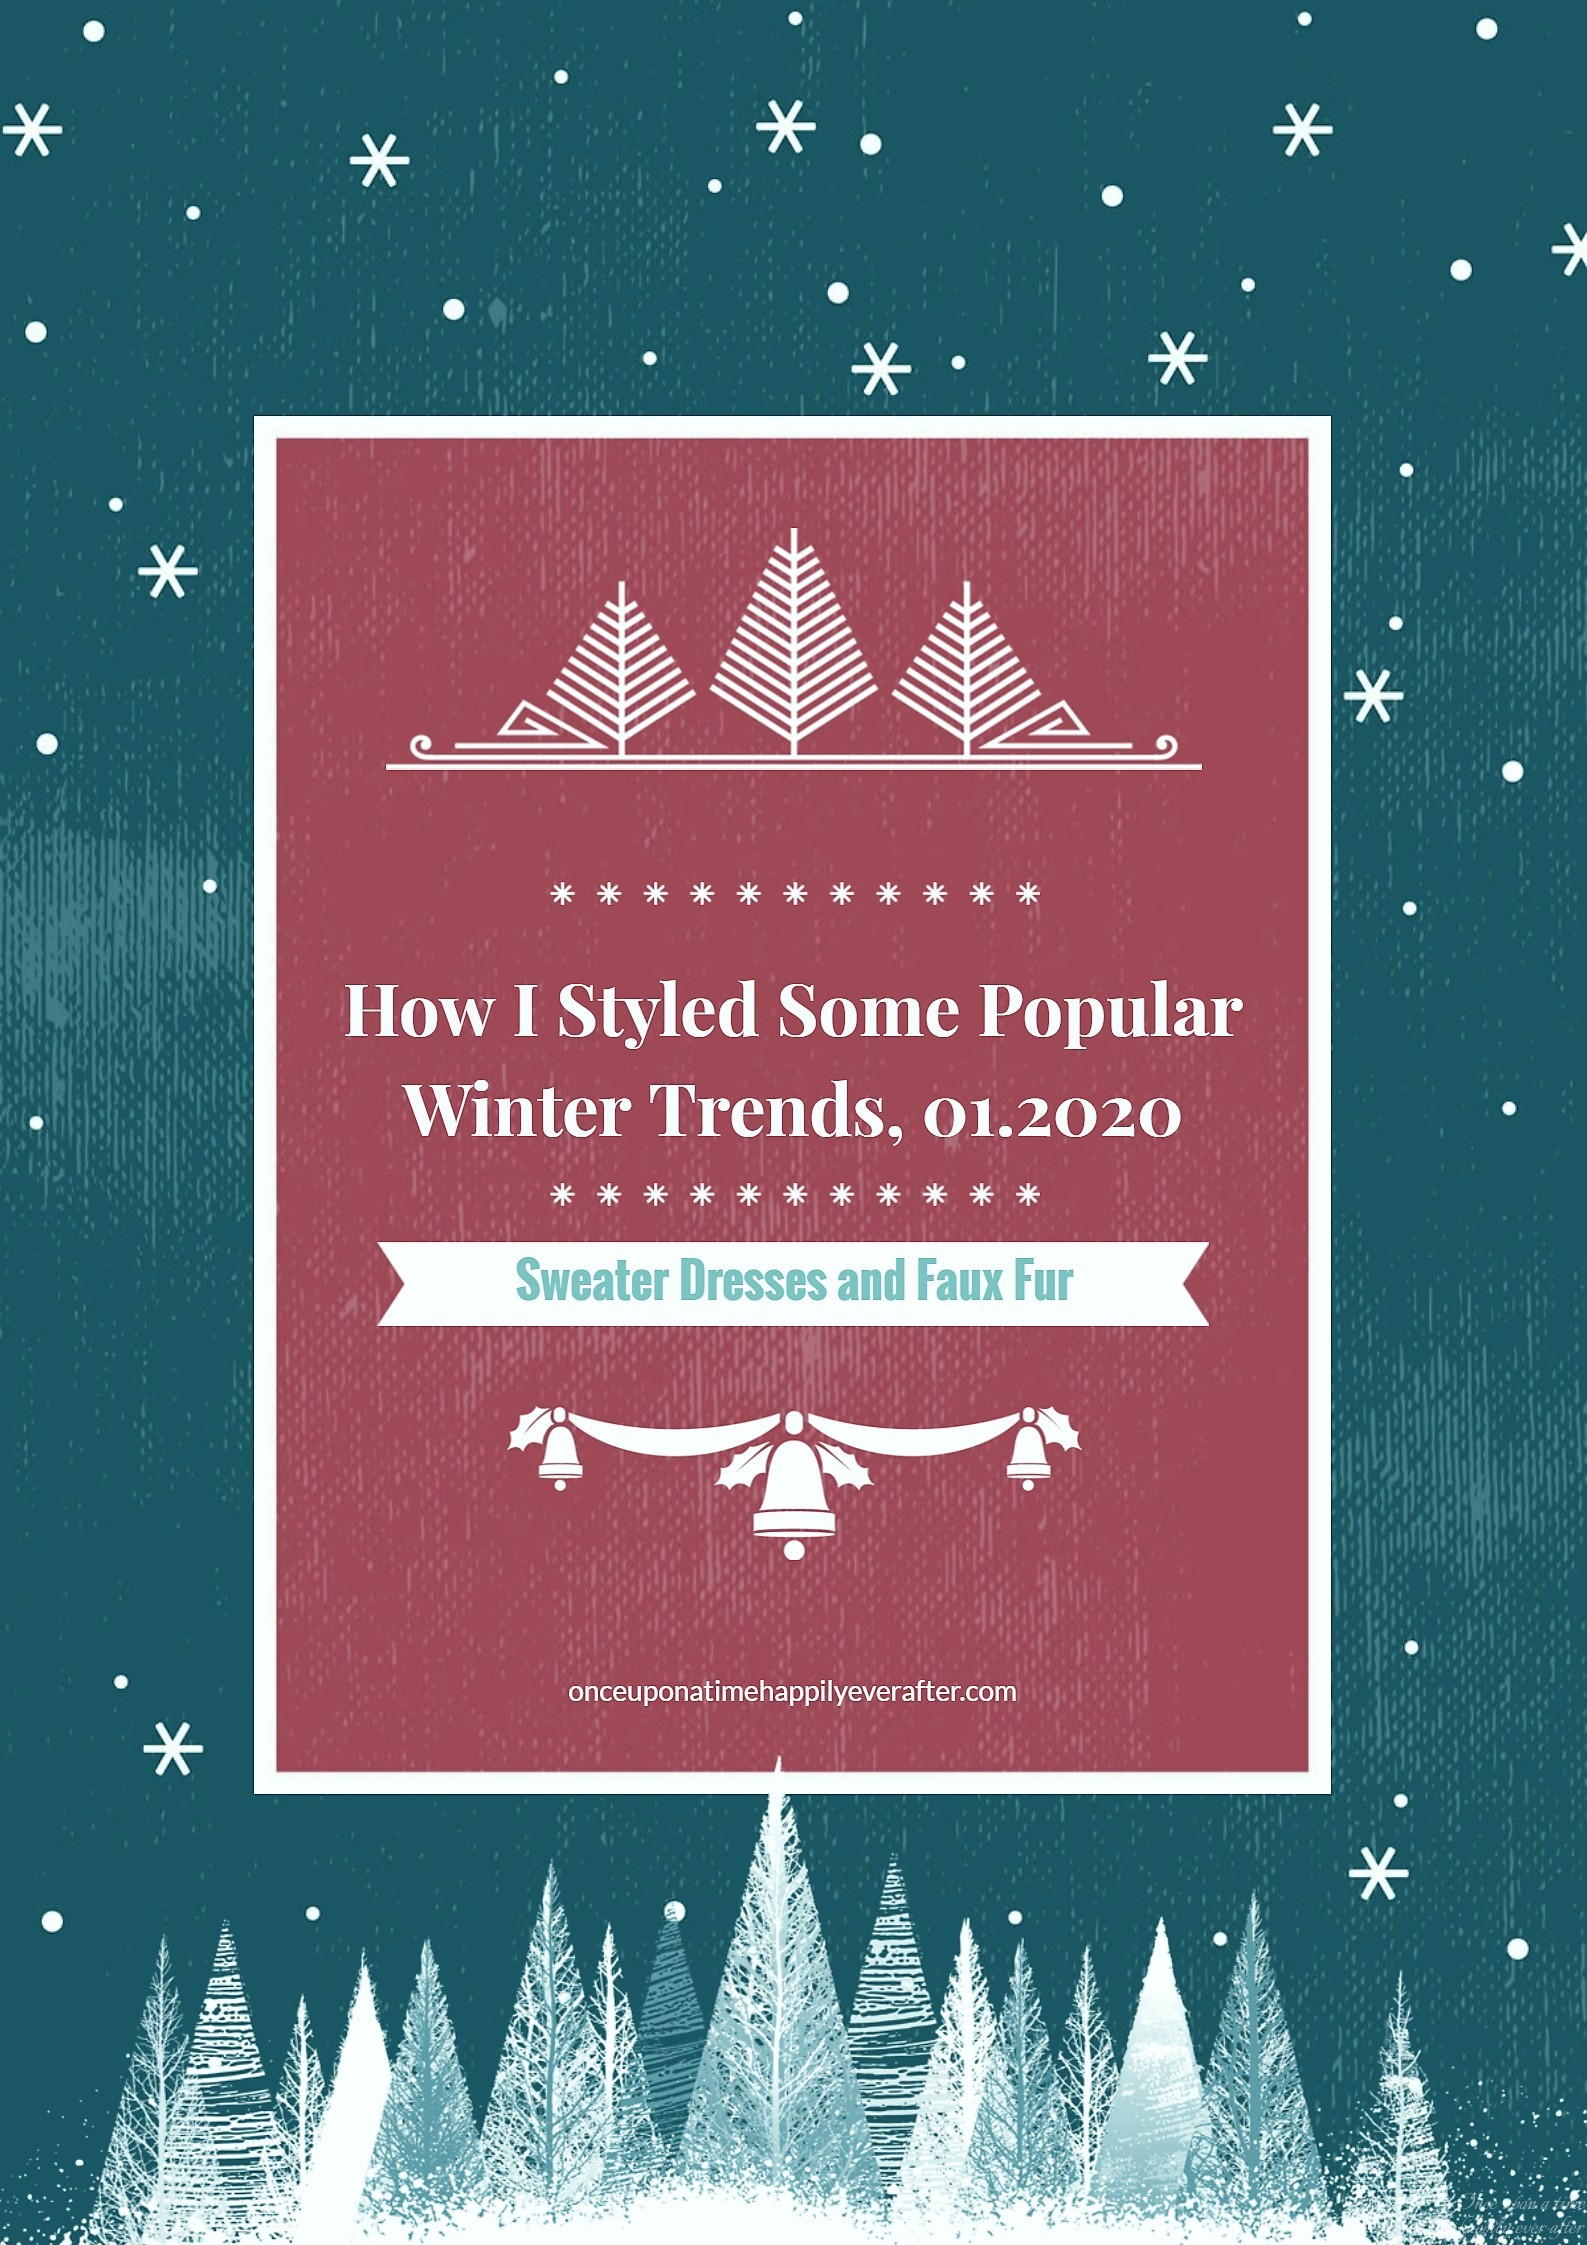 Winter Trends, 01.2020